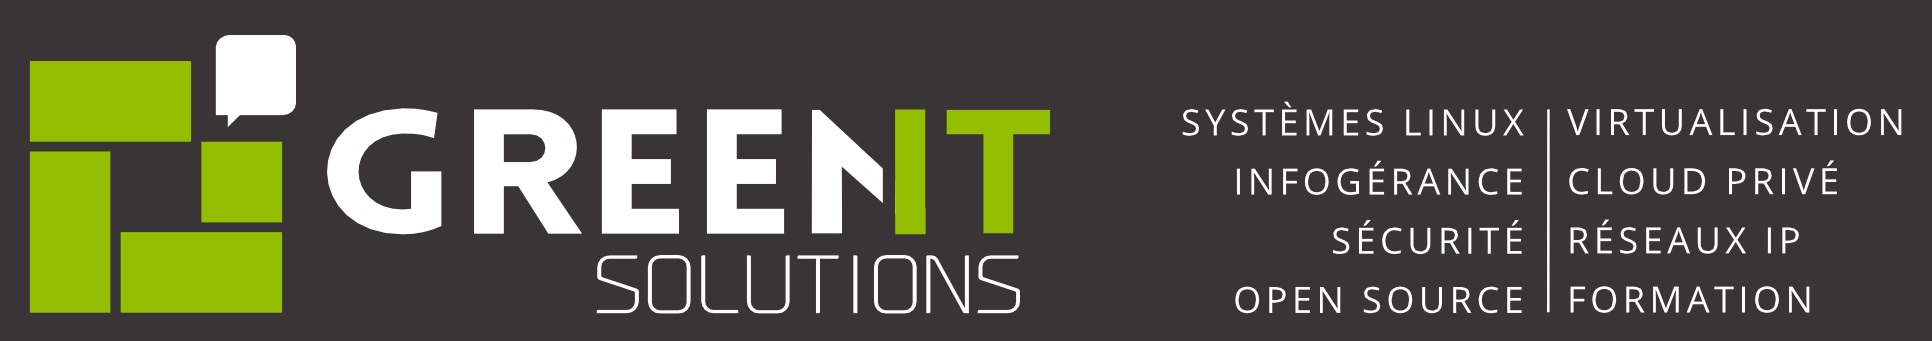 greenit solutions logo